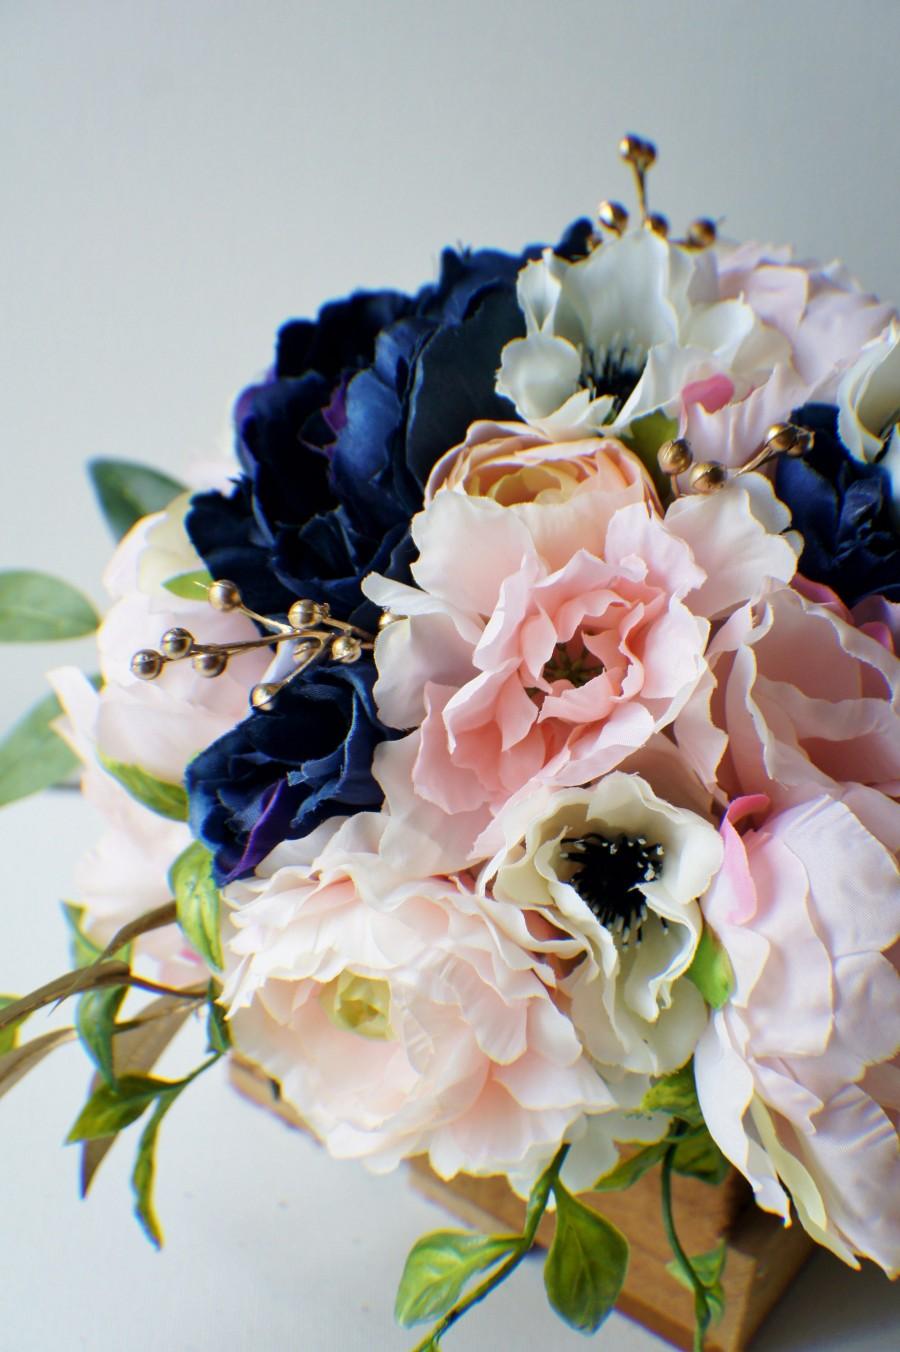 Wedding - Peony Bridal Bouquet, Silk Wedding Flowers, Blush Wedding Flowers, Vintage Wedding Blush Pink and Gold Shabby Chic Wedding, Bride Bridesmaid